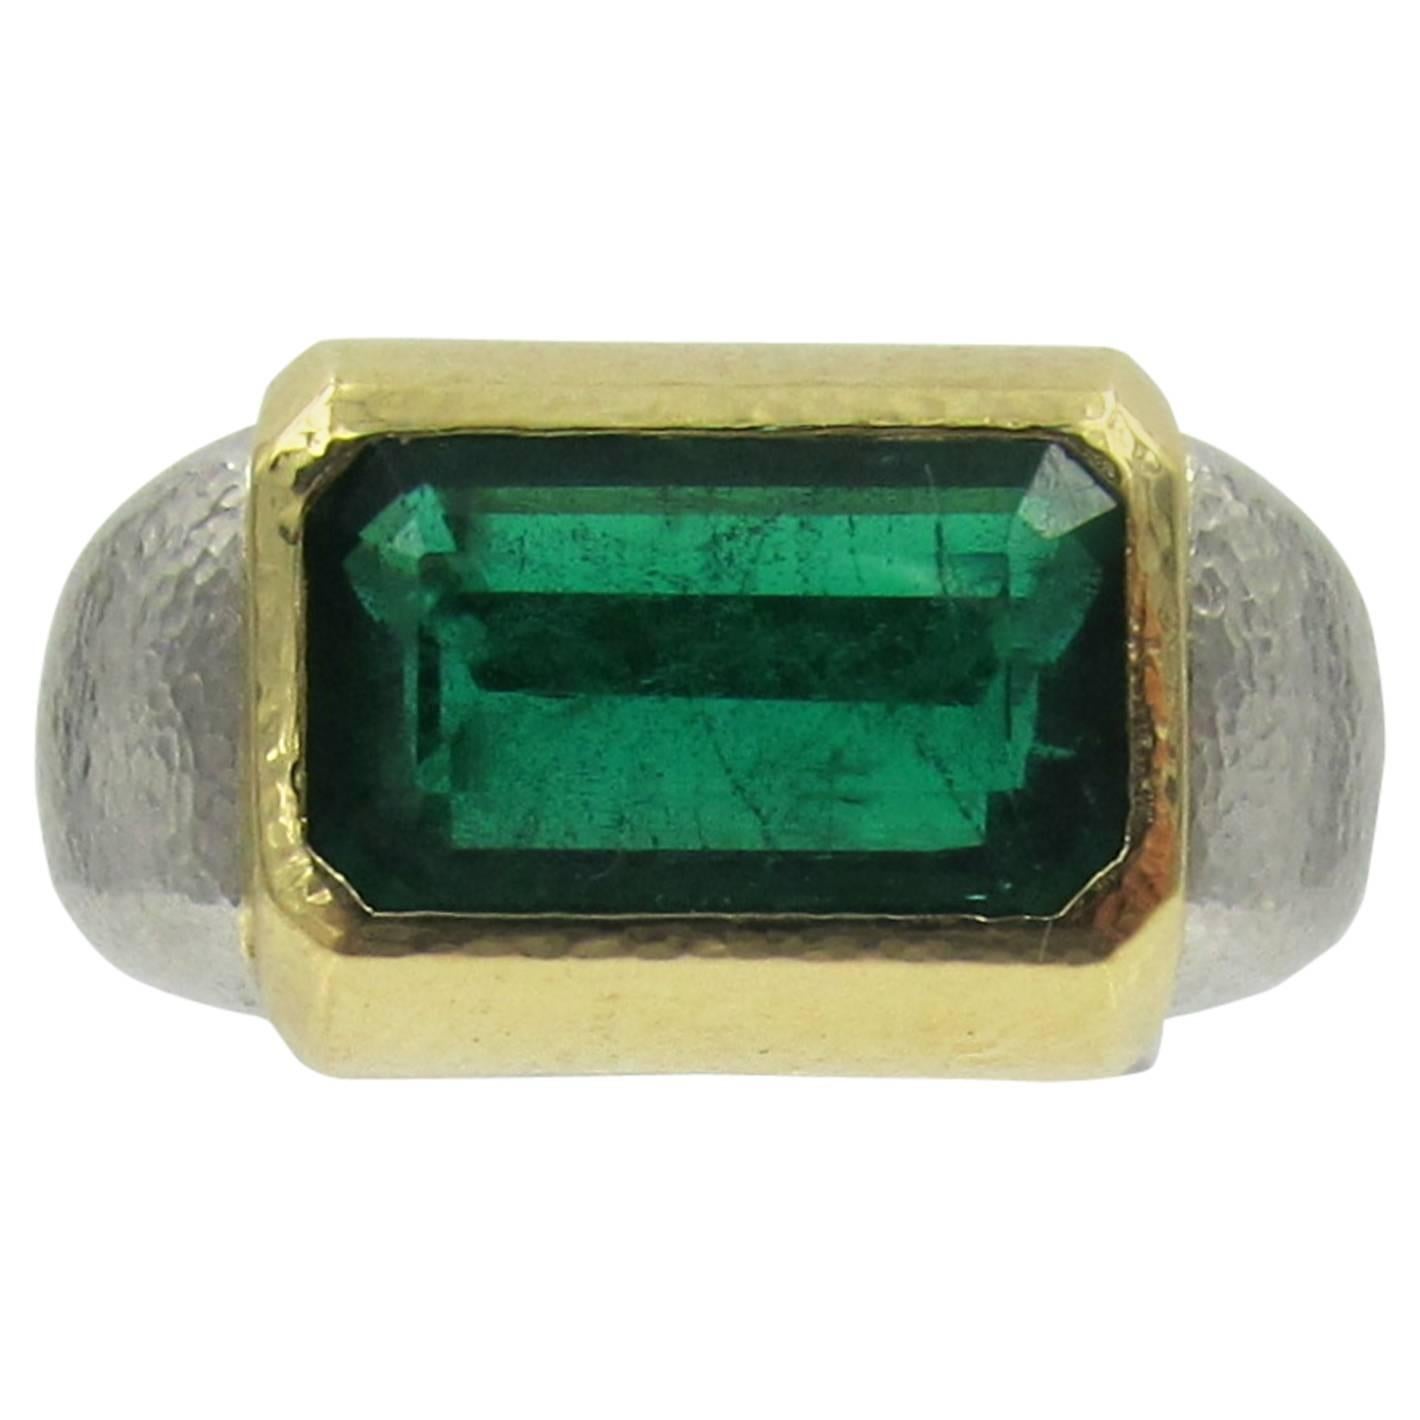 Émeraude de 5,41 carats de couleur verte vibrante enchâssée dans de l'or jaune 18k avec un anneau en platine martelé.
La taille de la bague est de 6 (redimensionnable)
Signé : David Webb
